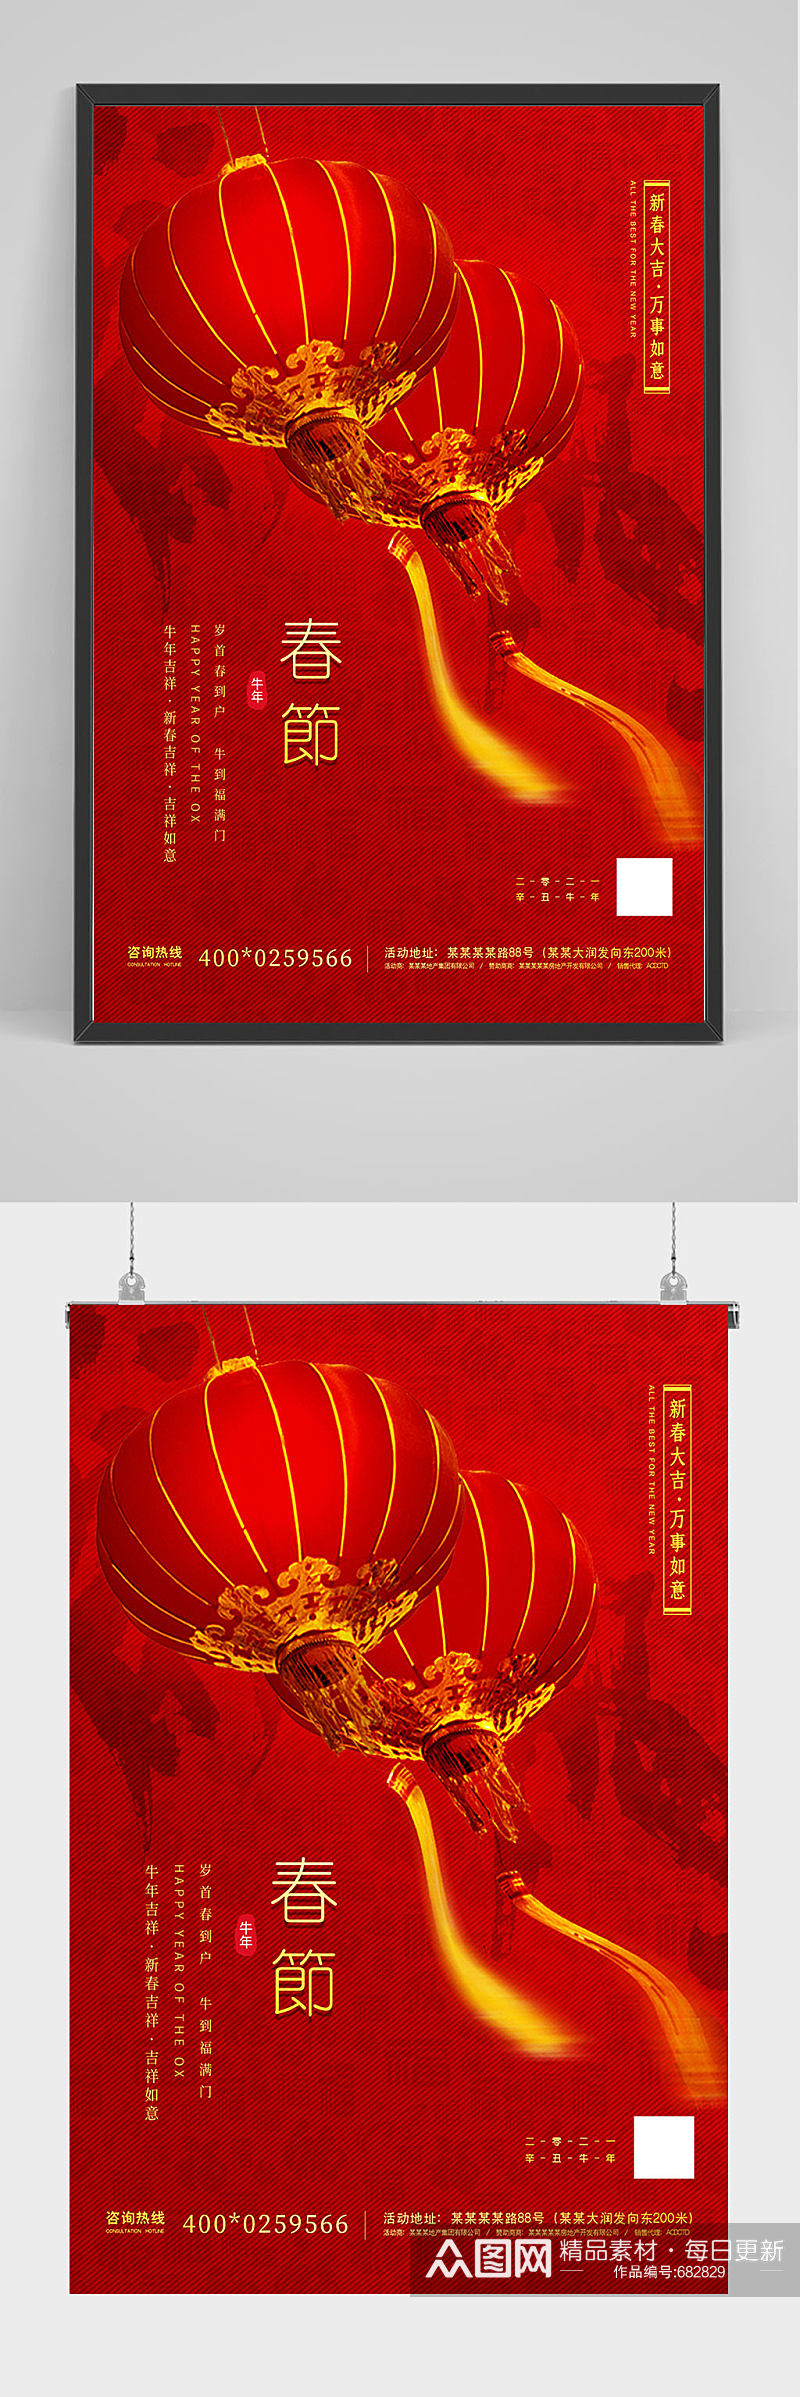 红色喜庆春节海报设计素材